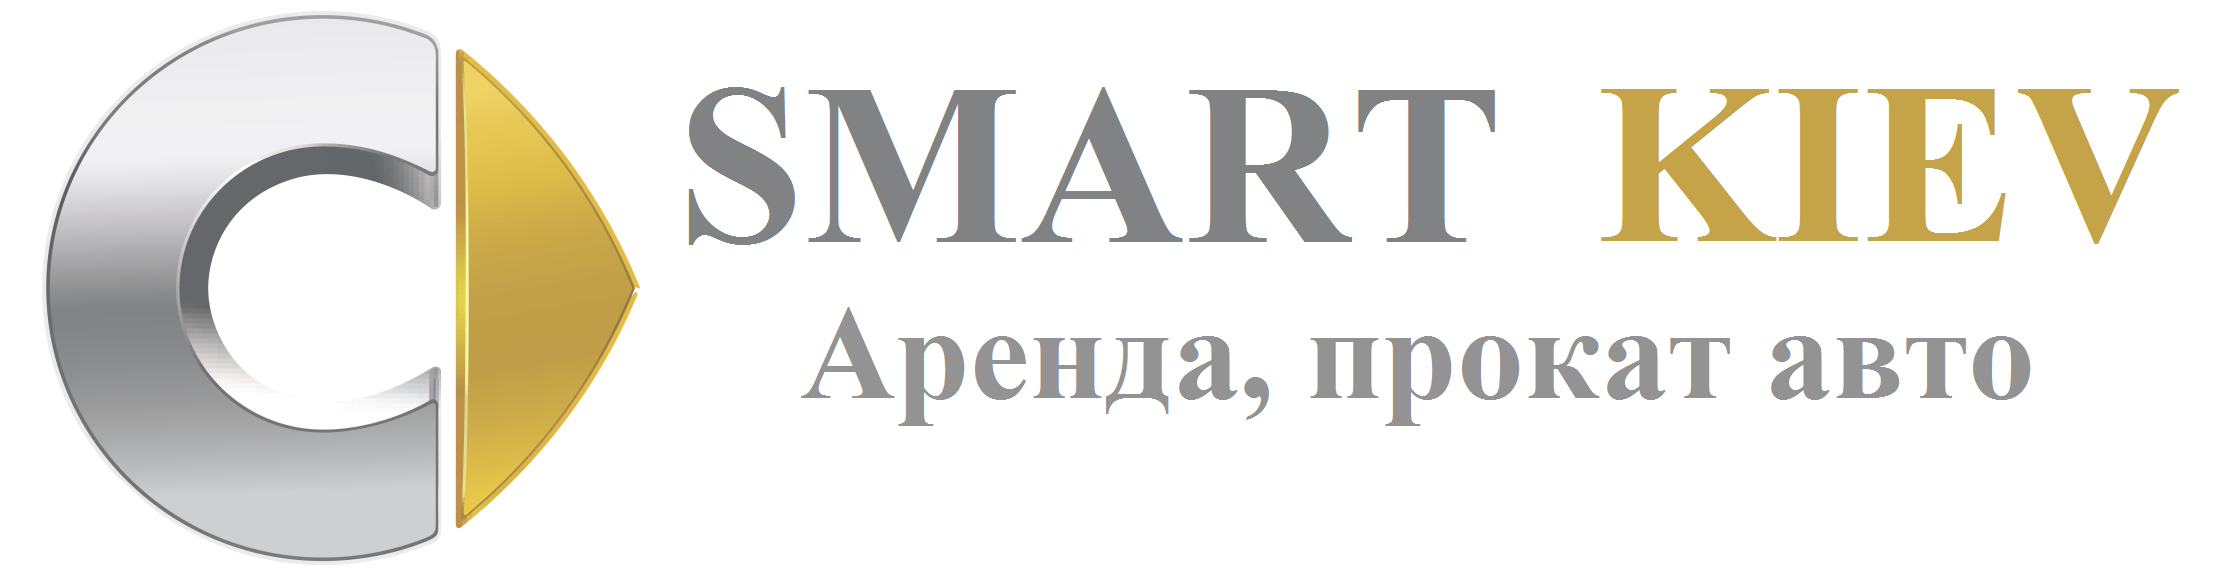 Smart Kiev